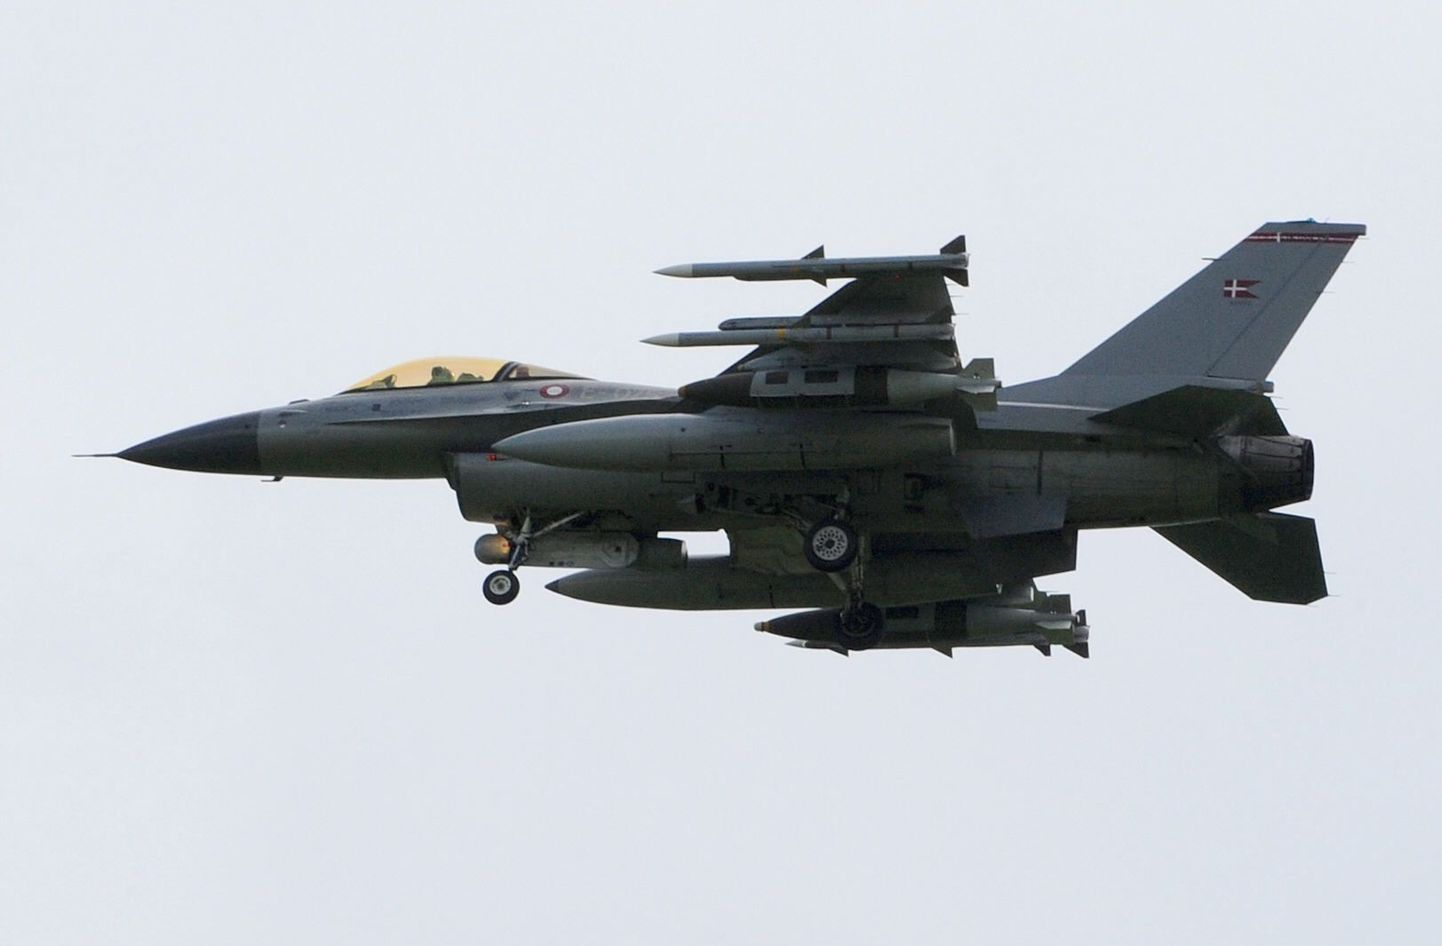 Taani õhuvägede F-16-tüüpi hävitaja.